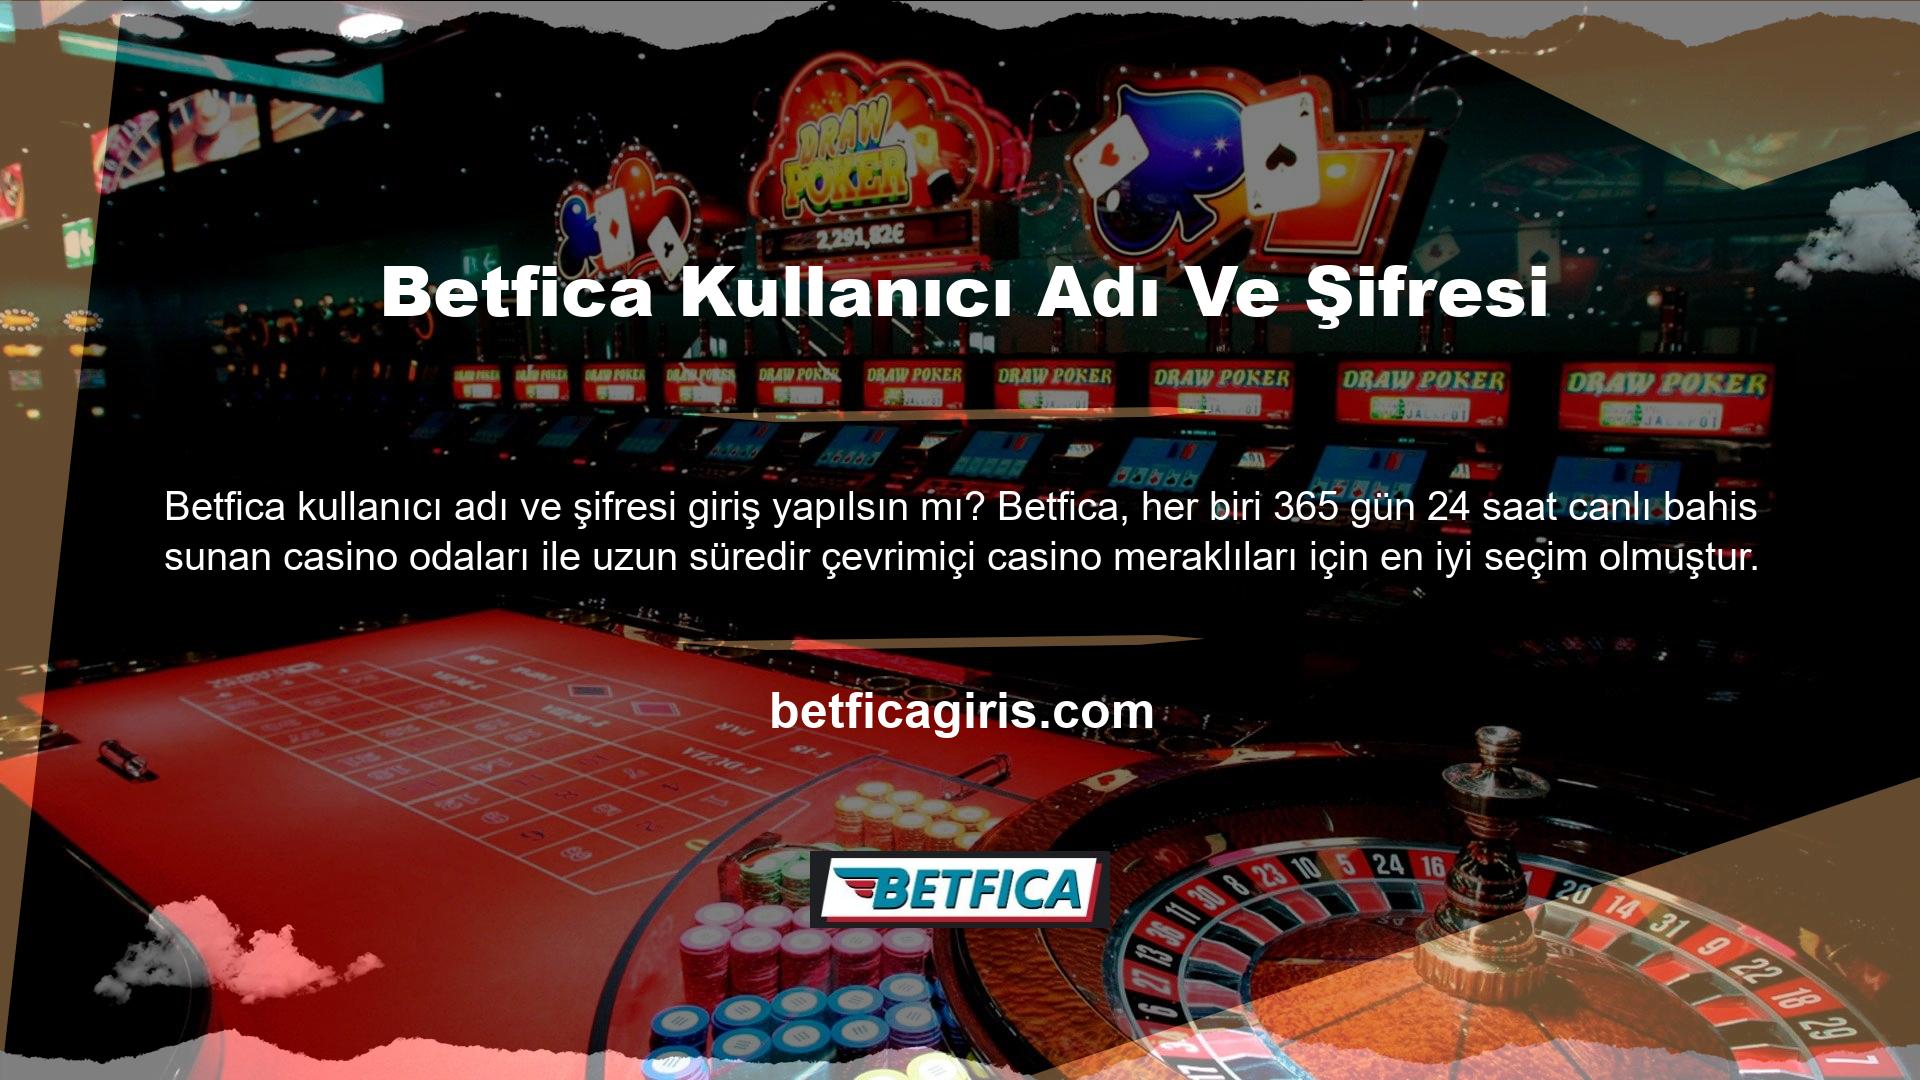 Türkiye'de casino ve canlı casino faaliyetlerine yönelik kısıtlamalar nedeniyle Betfica sitesine erişim sağlanamayabilir